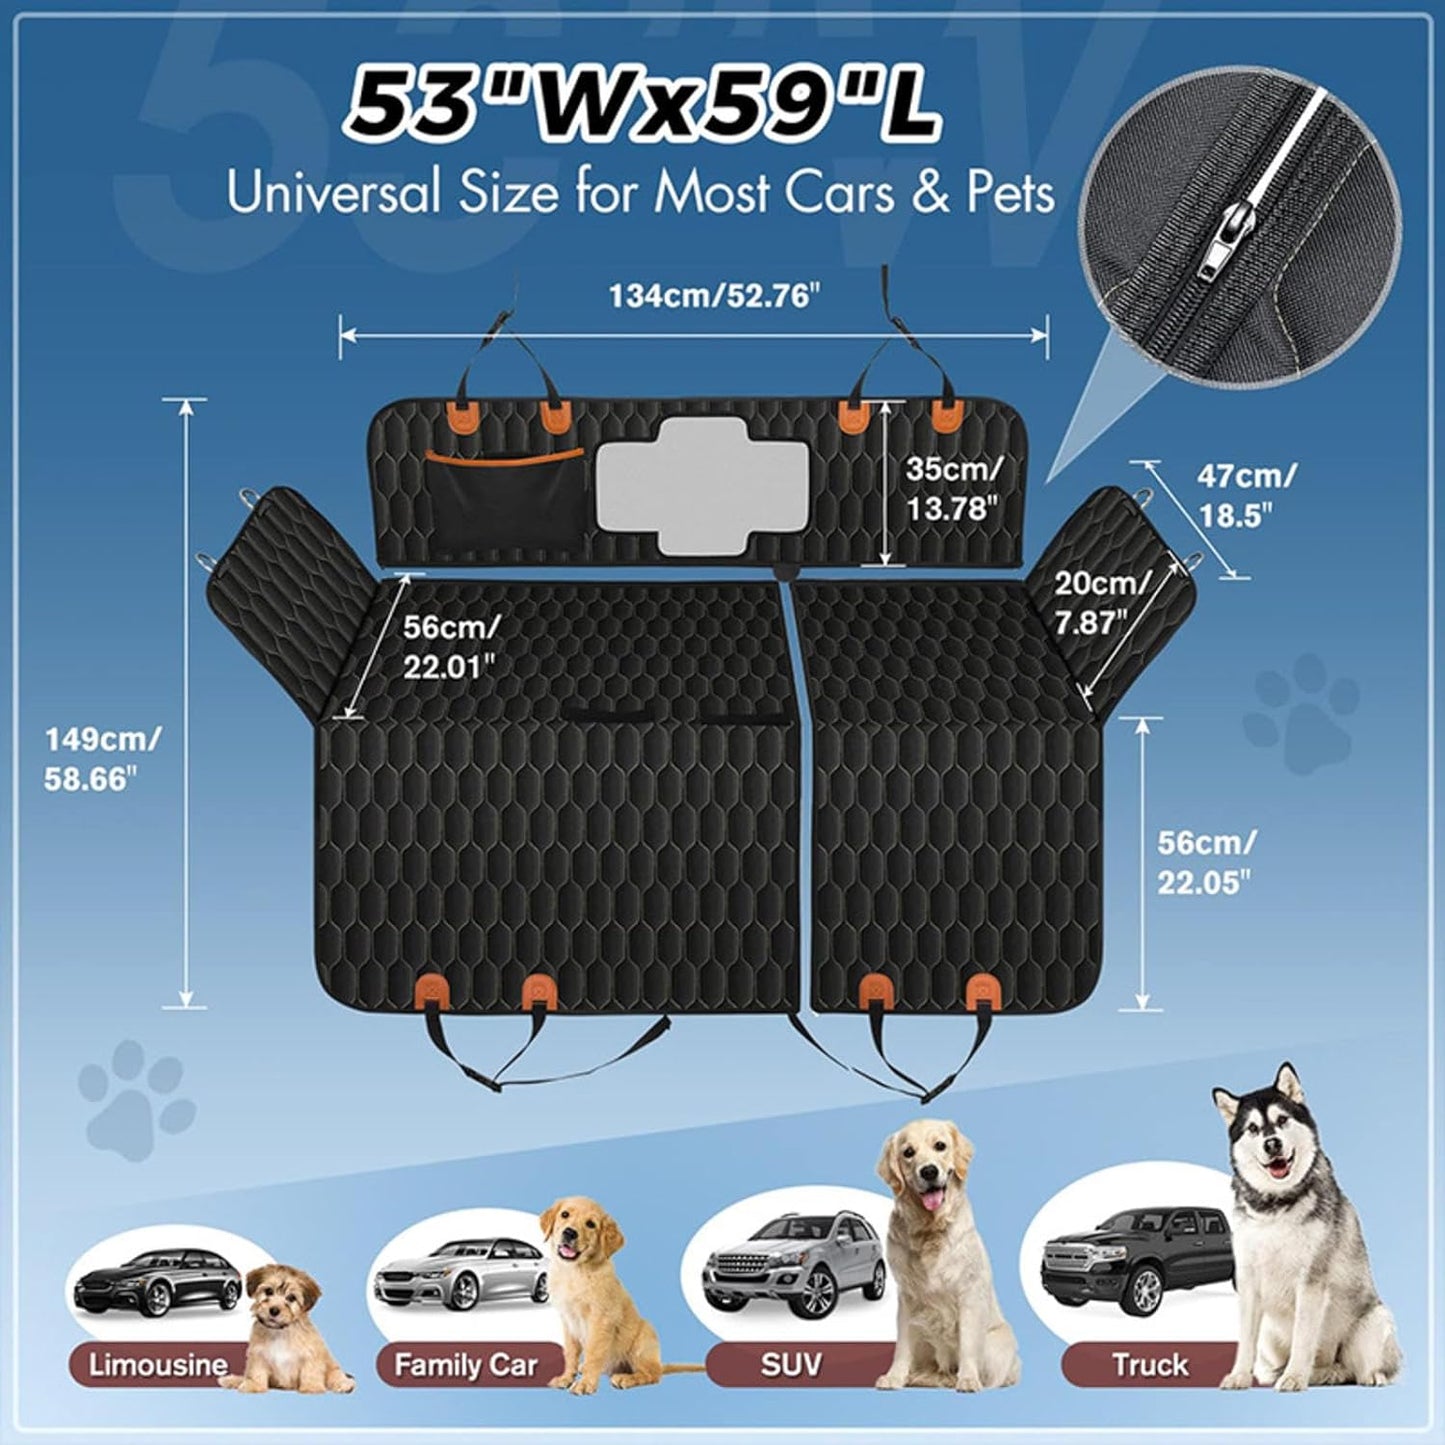 Couverture pour chien de qualité supérieure pour coffre de voiture - Couverture pour chien imperméable et résistante aux rayures - Couverture de voiture pour coffre de chien - Couverture de coffre pour chiens 